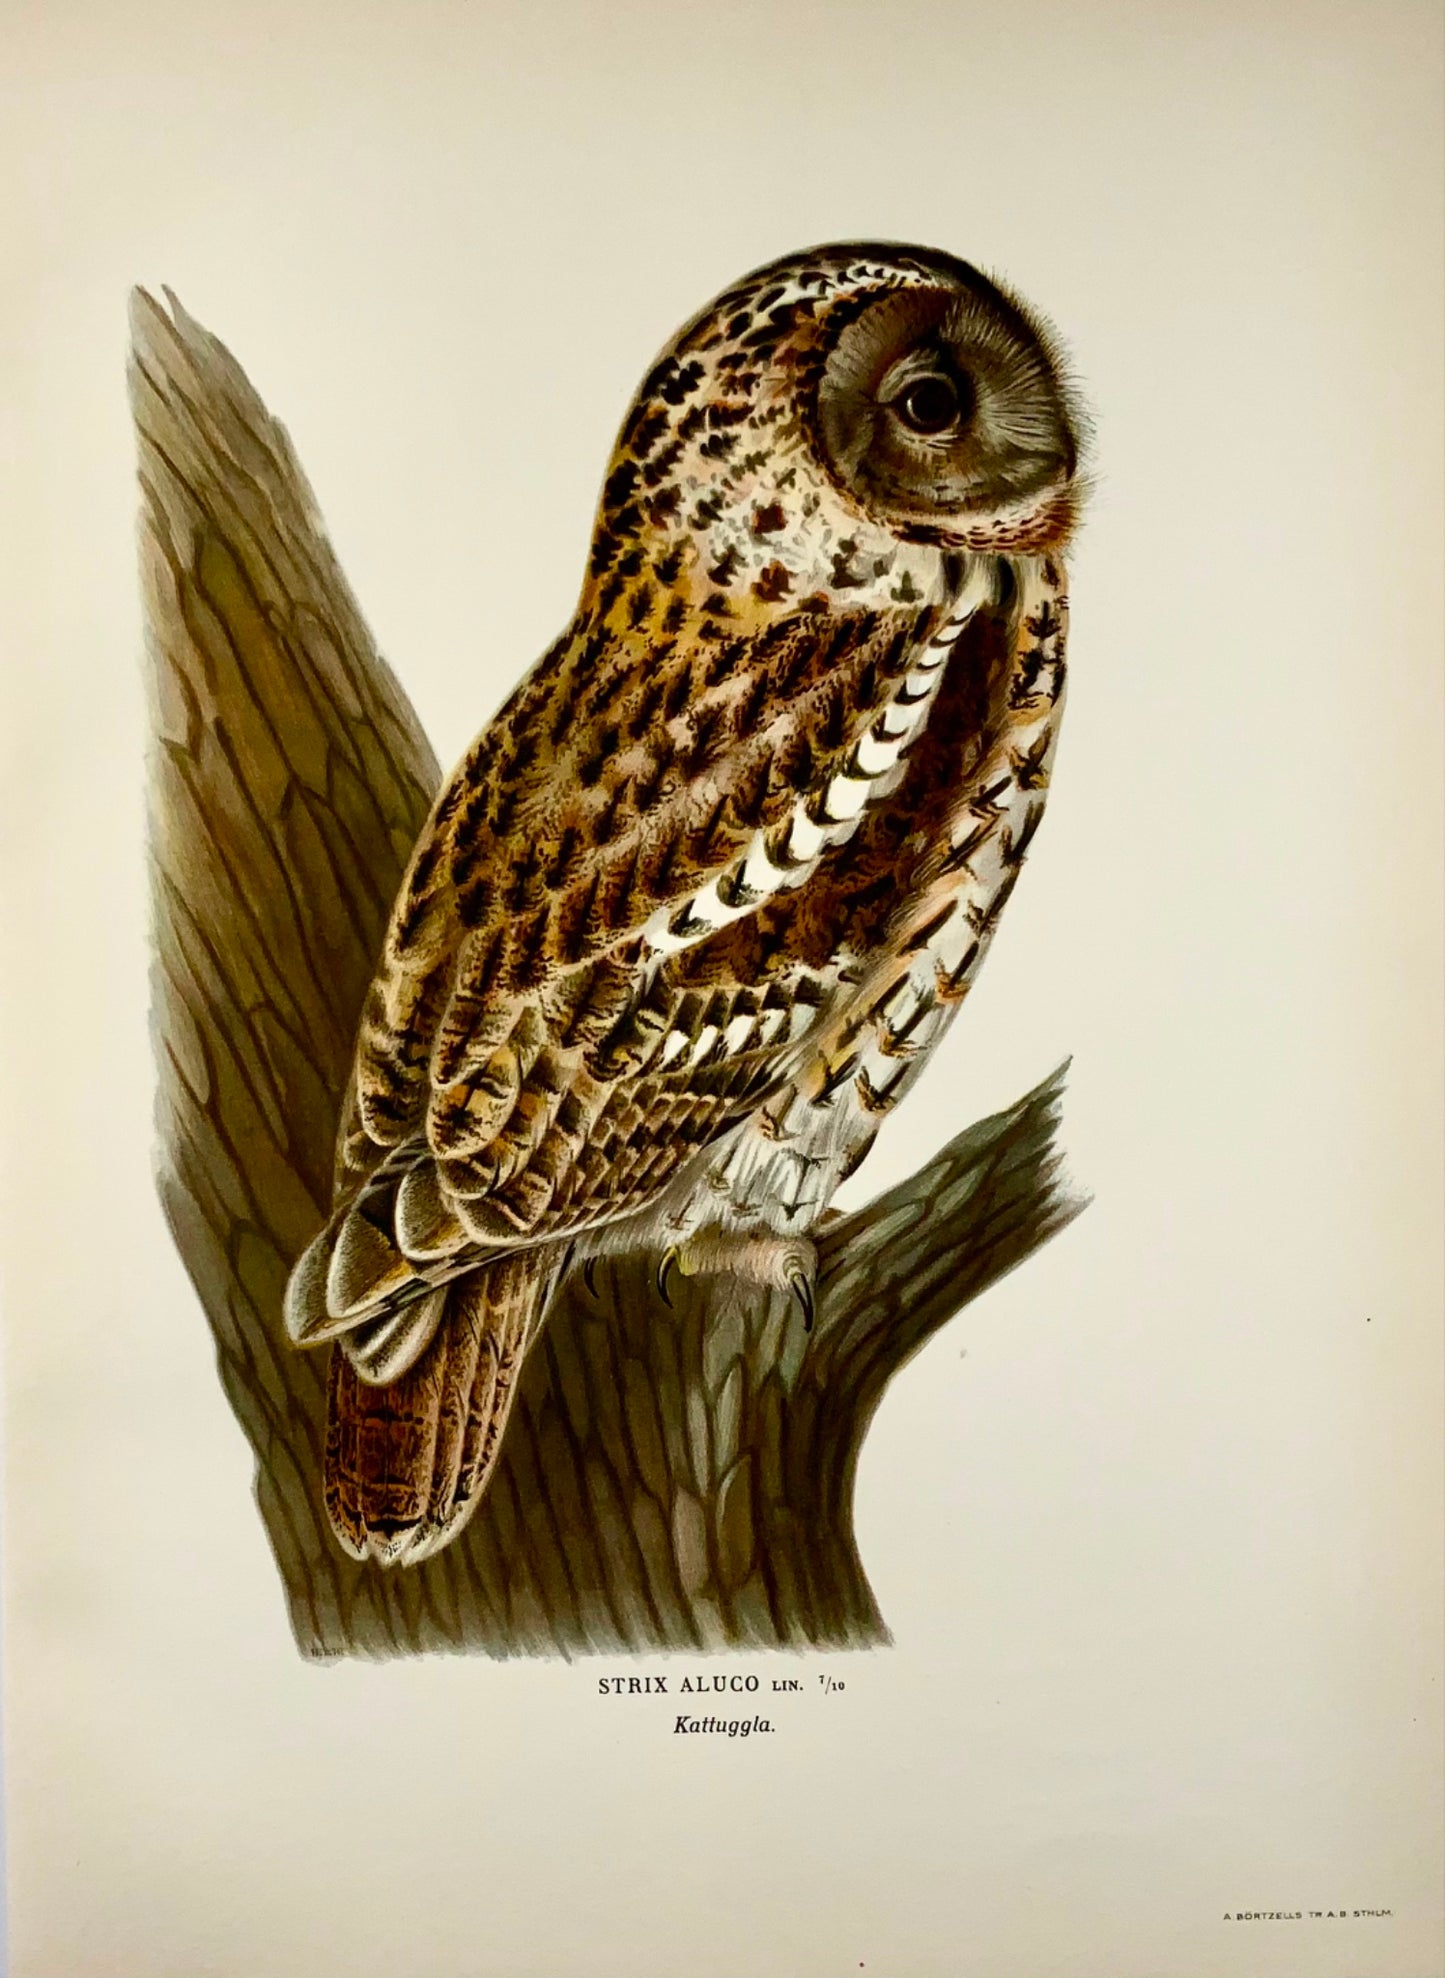 1918 Von Wright, Allocco, grande litografia in folio, ornitologia